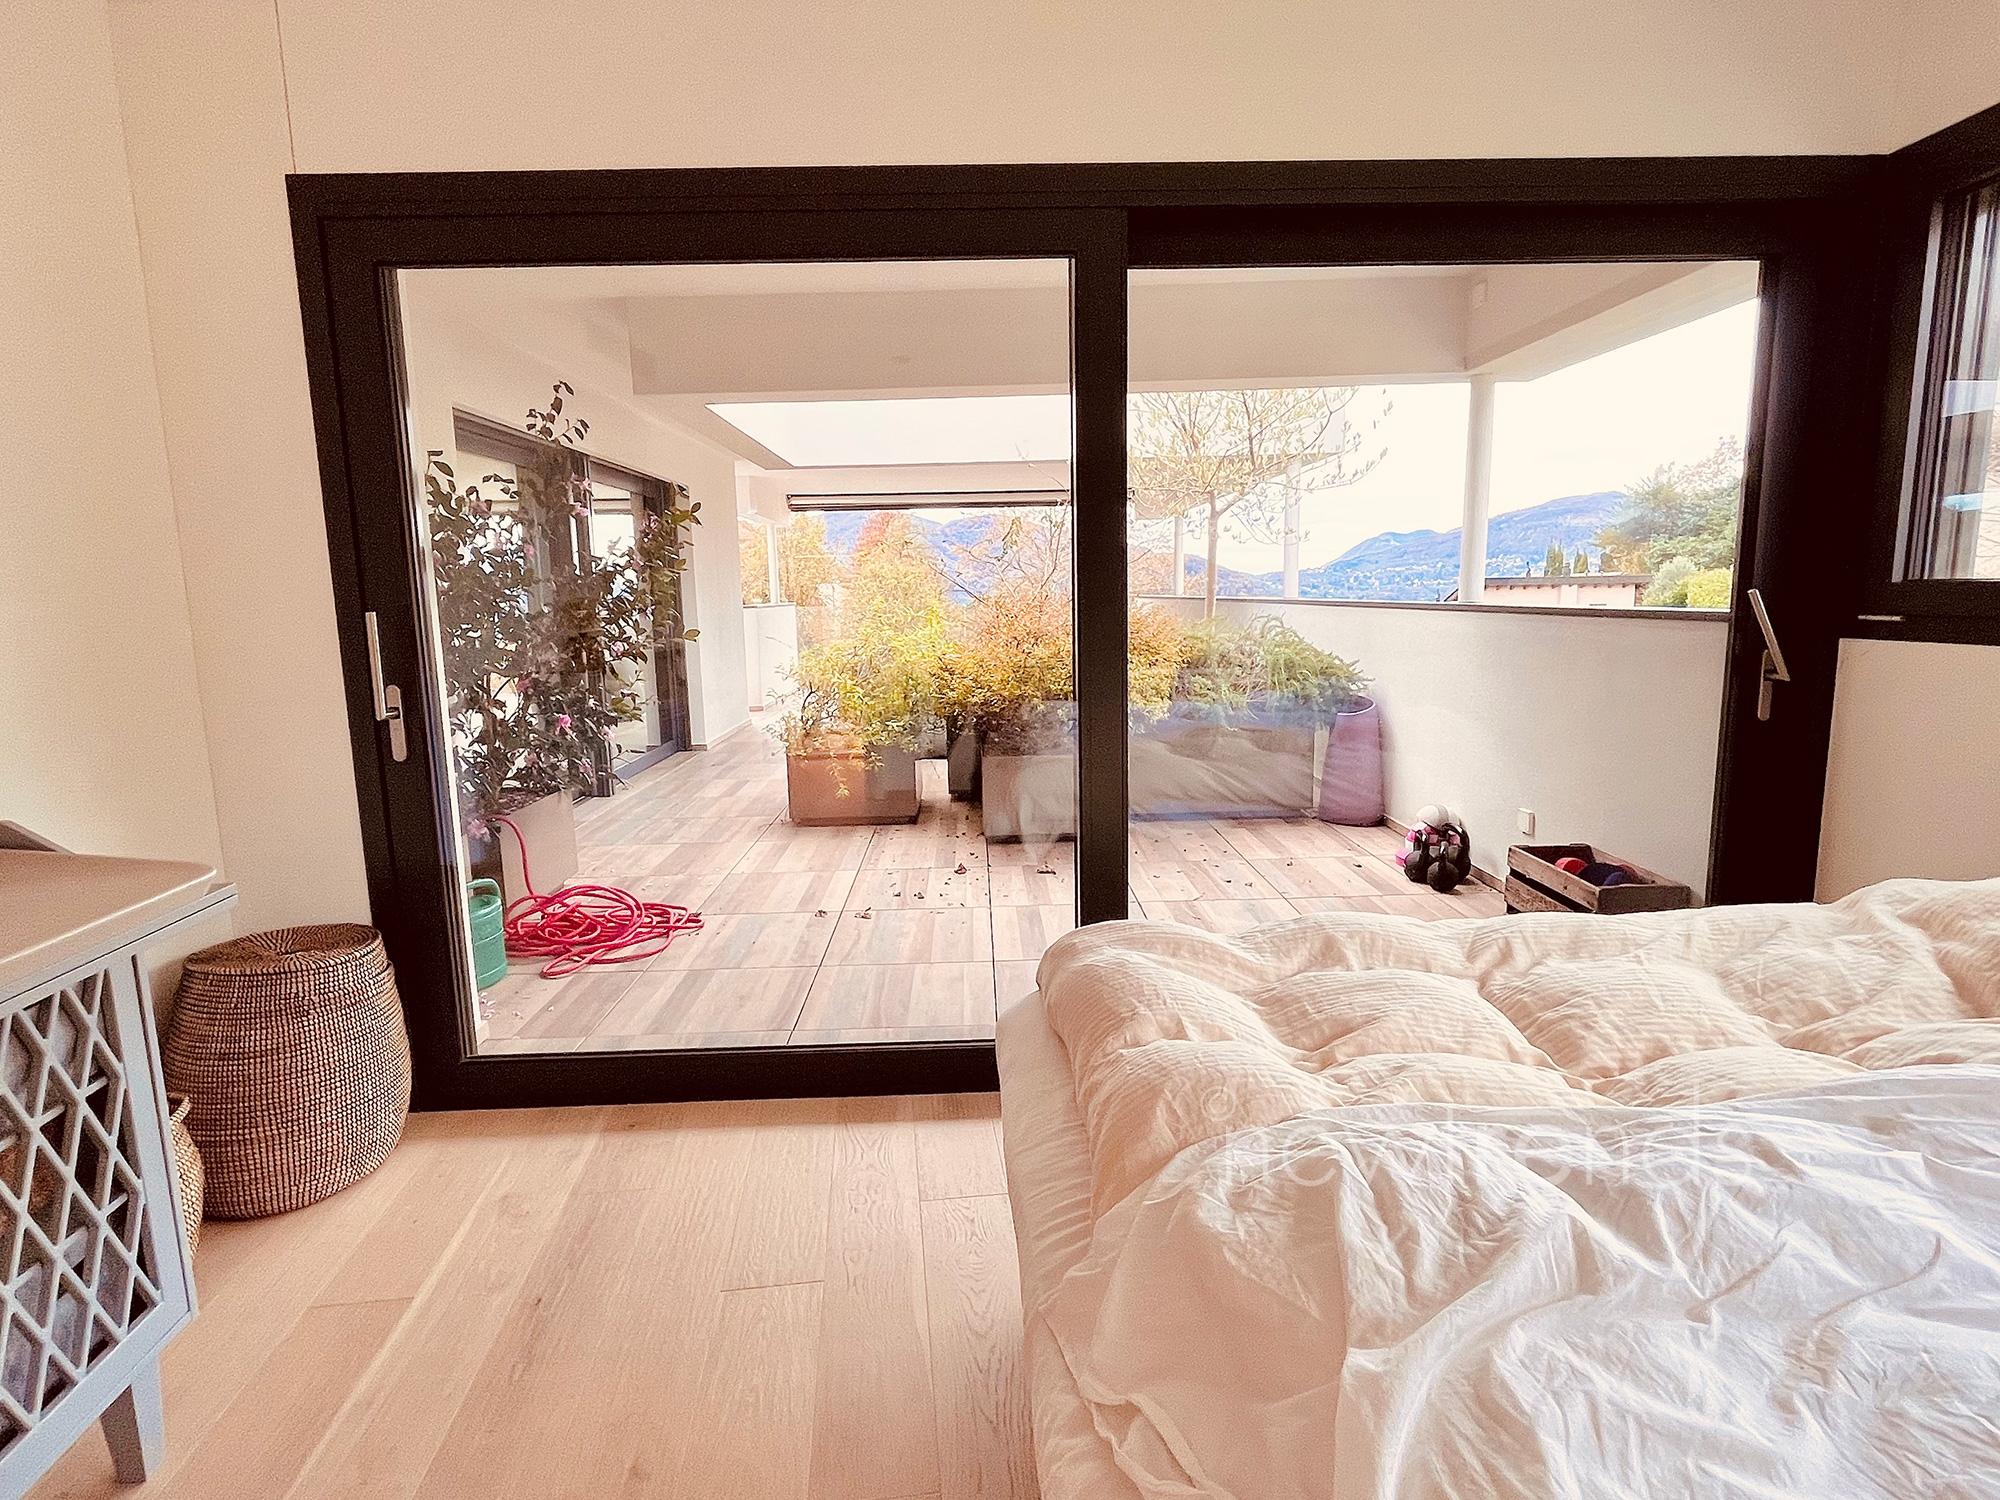 vendesi moderno attico con ampia terrazza vista lago a montagnola: foto camera padronale